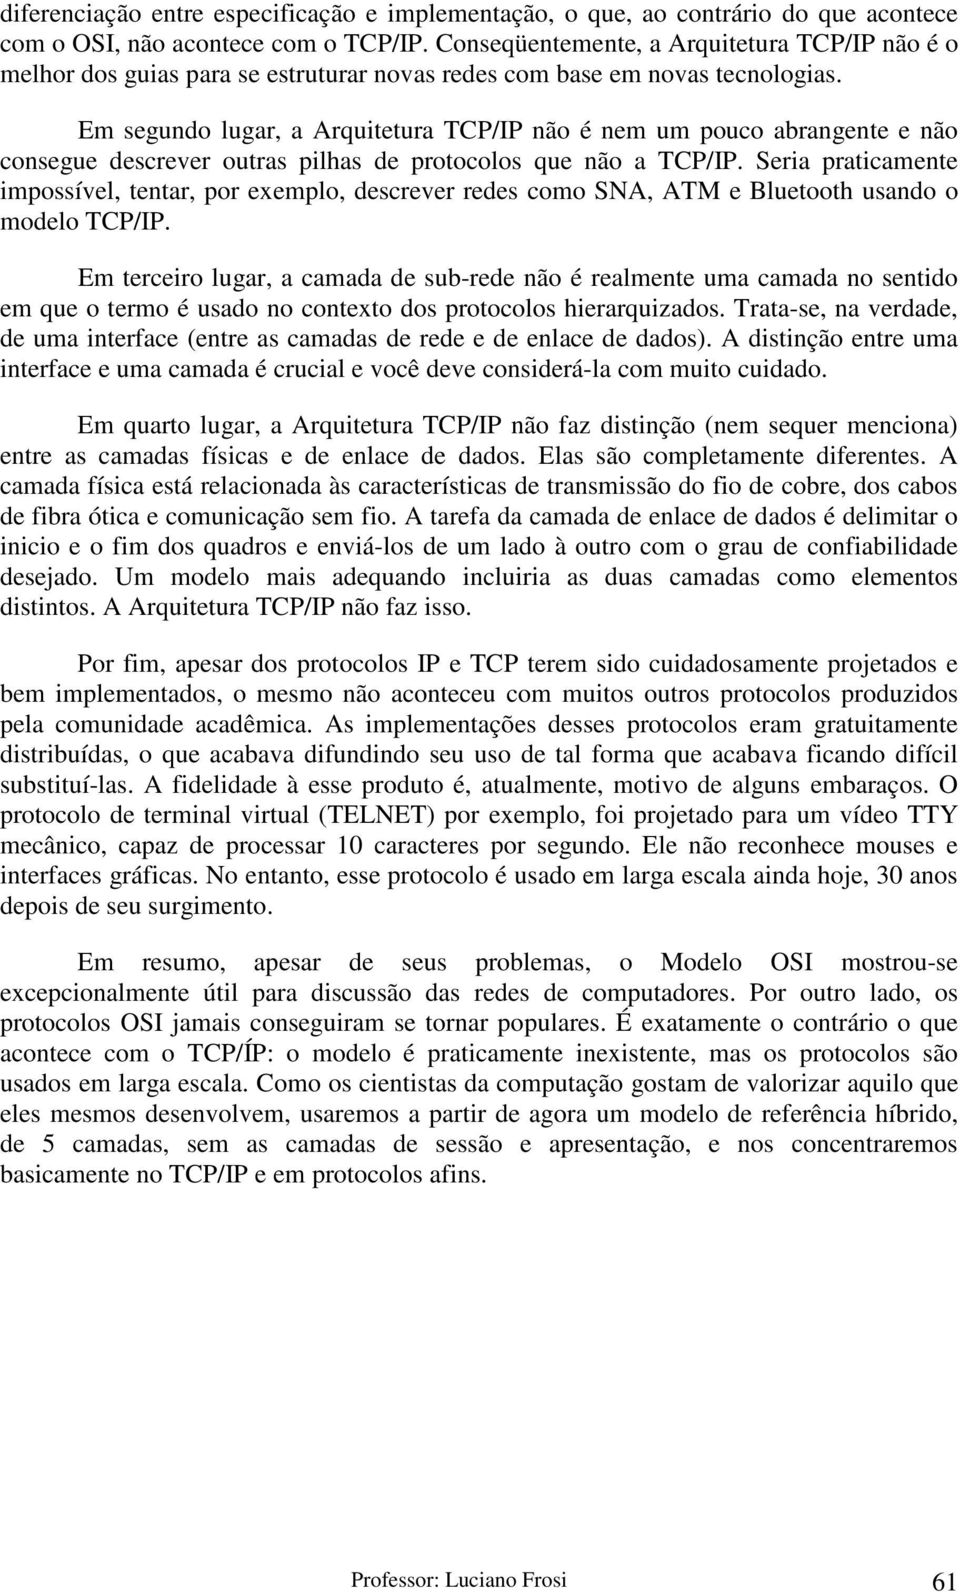 Em segundo lugar, a Arquitetura TCP/IP não é nem um pouco abrangente e não consegue descrever outras pilhas de protocolos que não a TCP/IP.